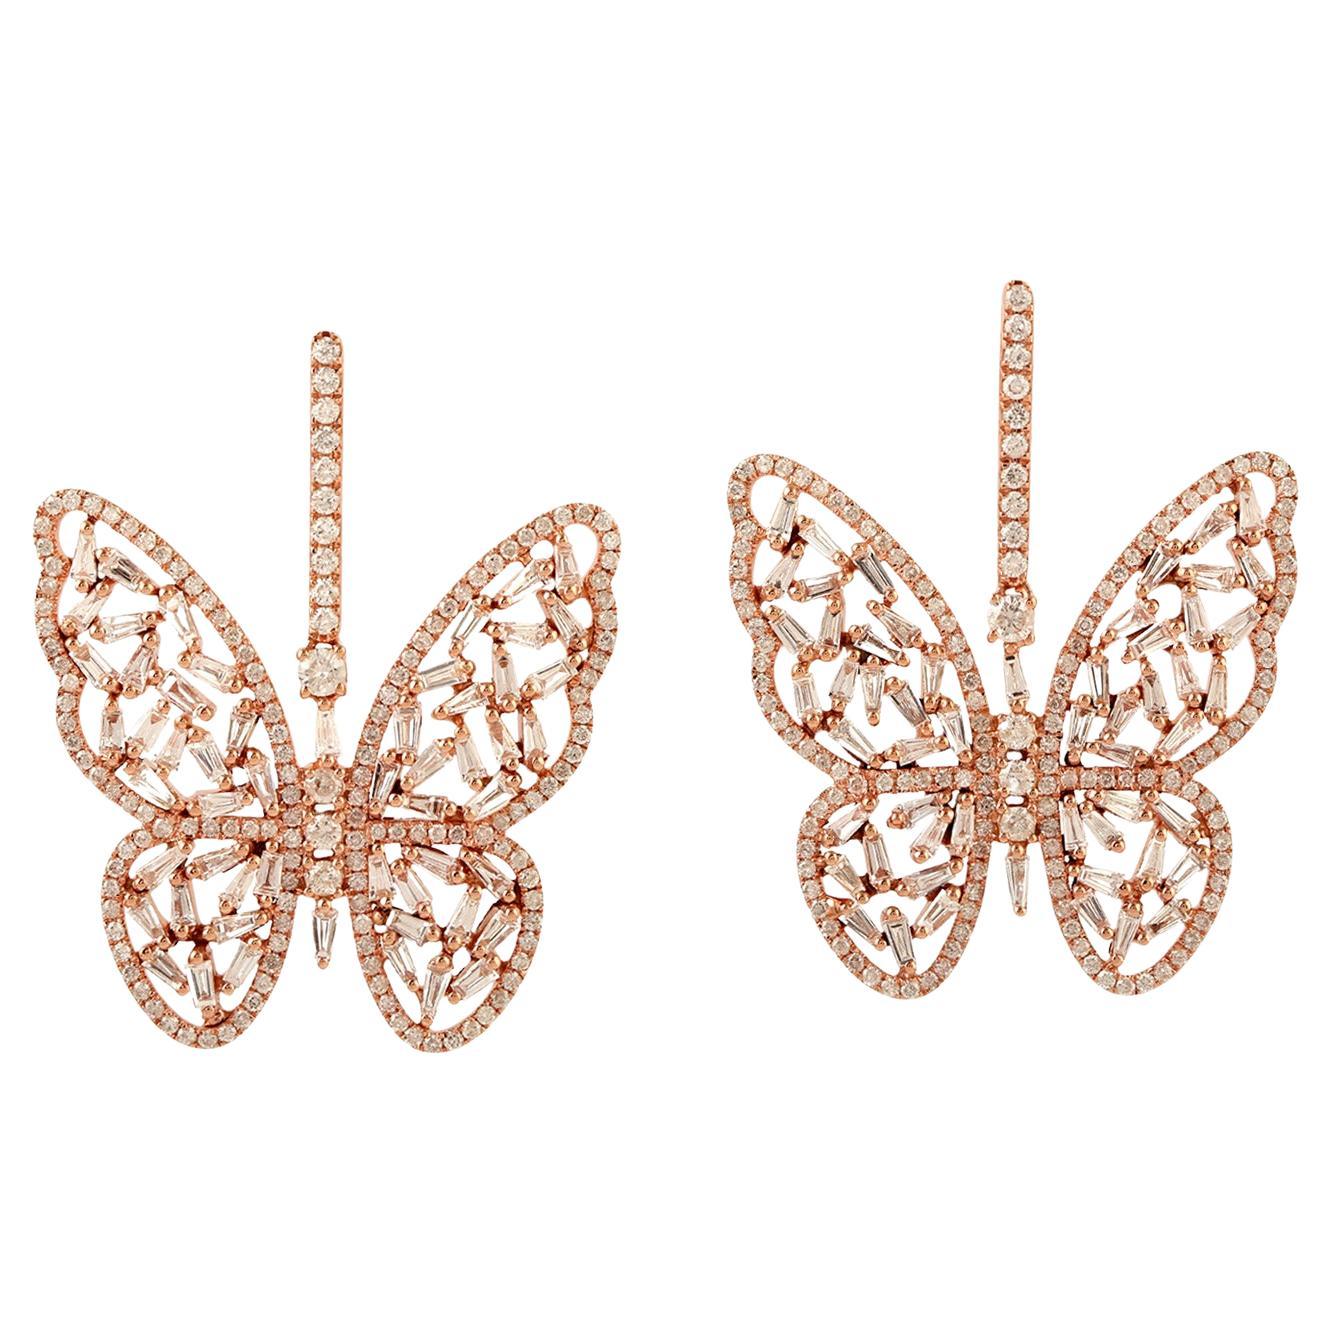 Butterfly Shaped 18k Gold Dangle Earrings Set in Diamonds